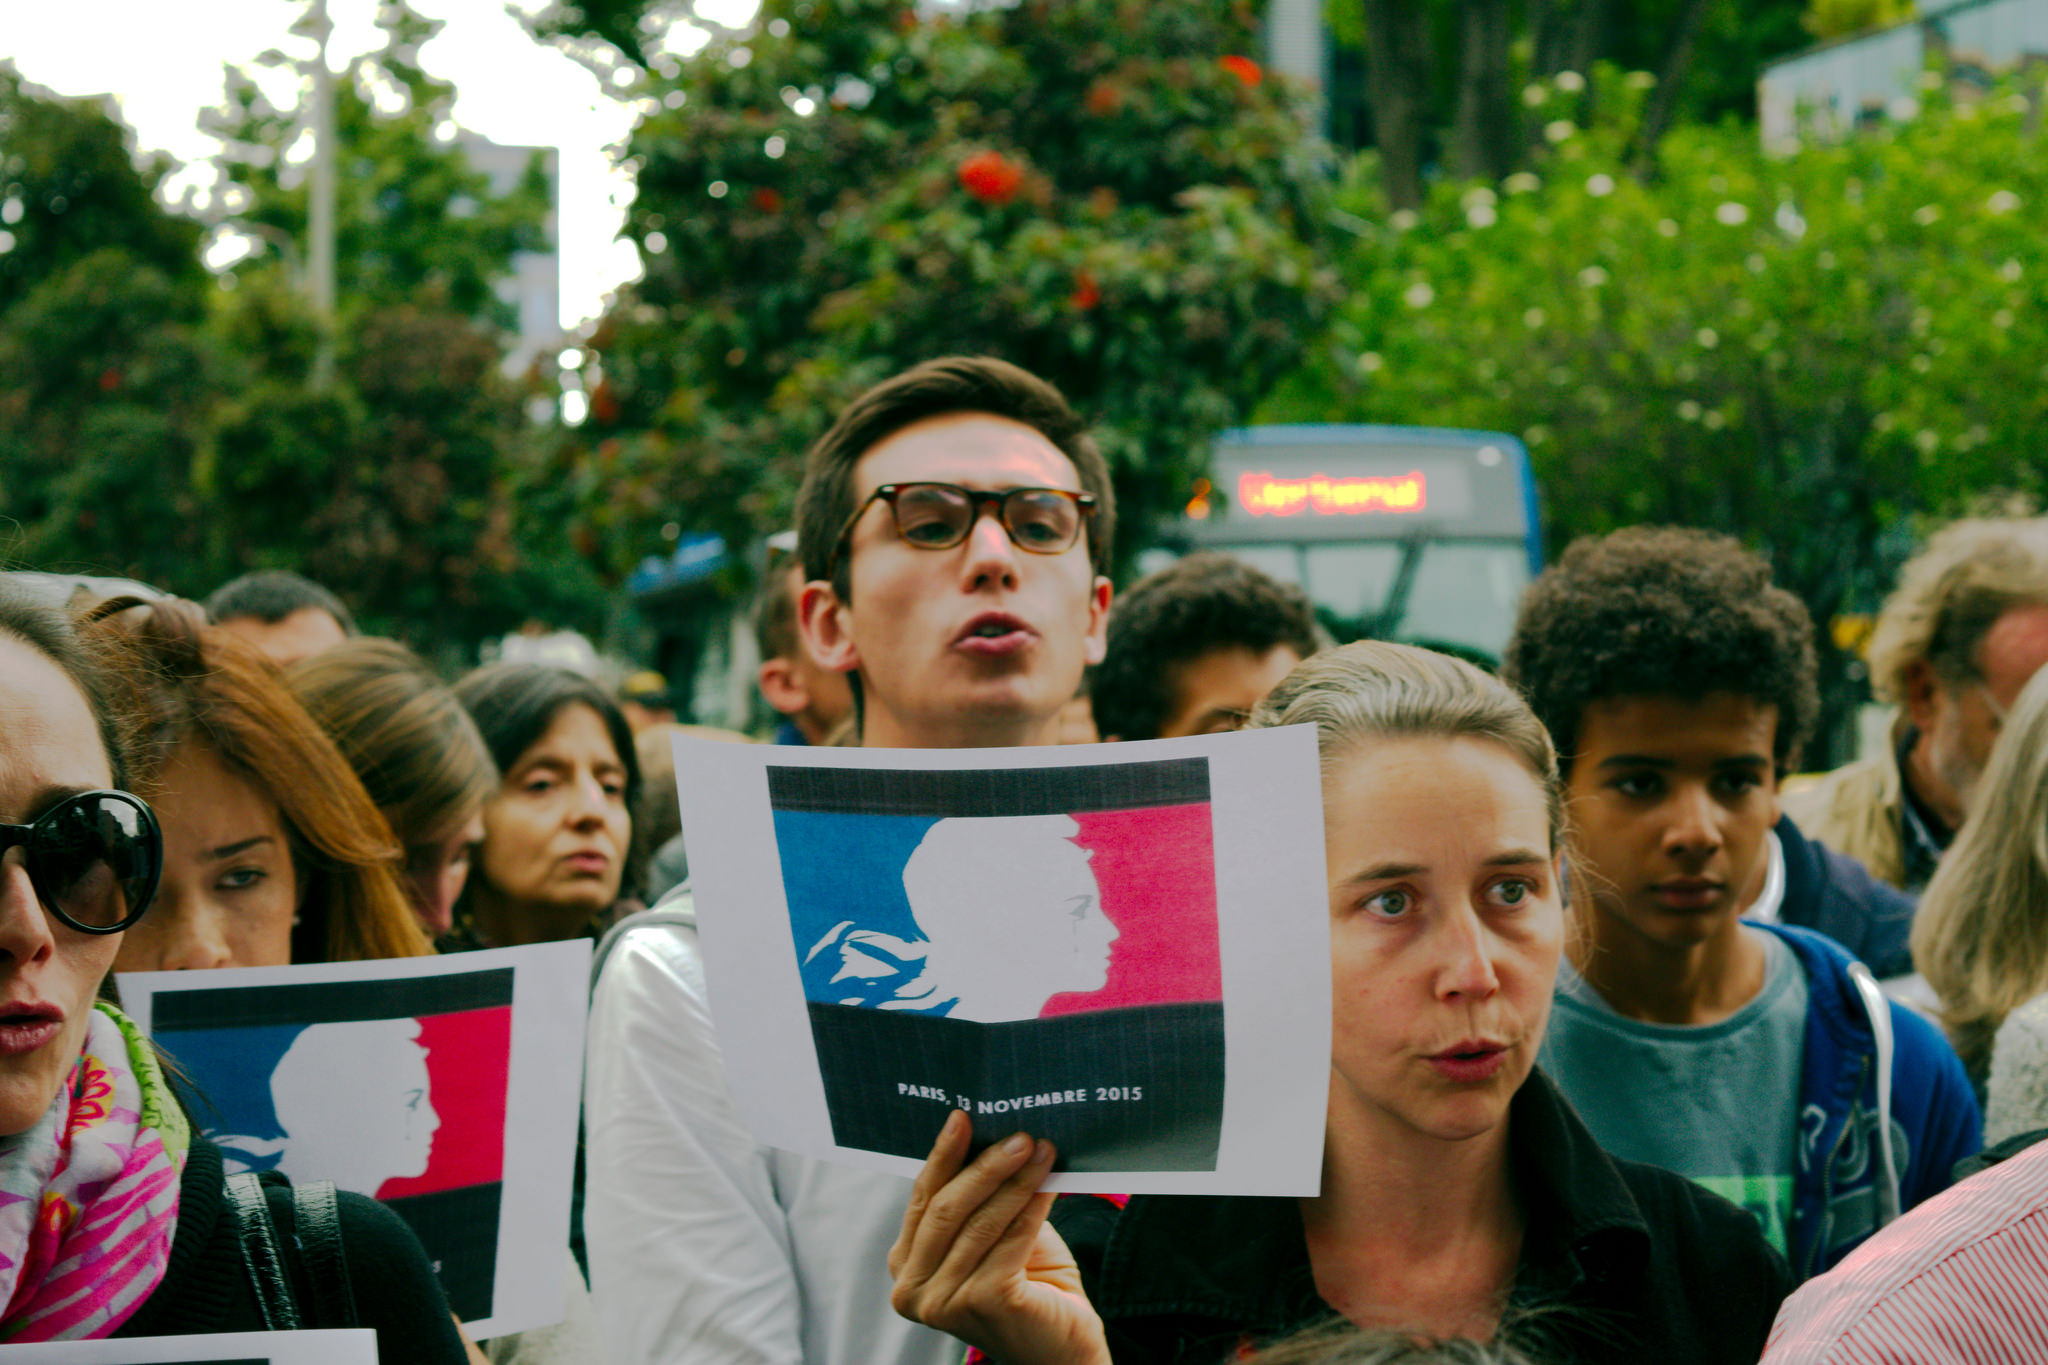 Homenaje en Bogotá a las víctimas de los atentados de París en noviembre 2015. Foto: Léo Tisseau.